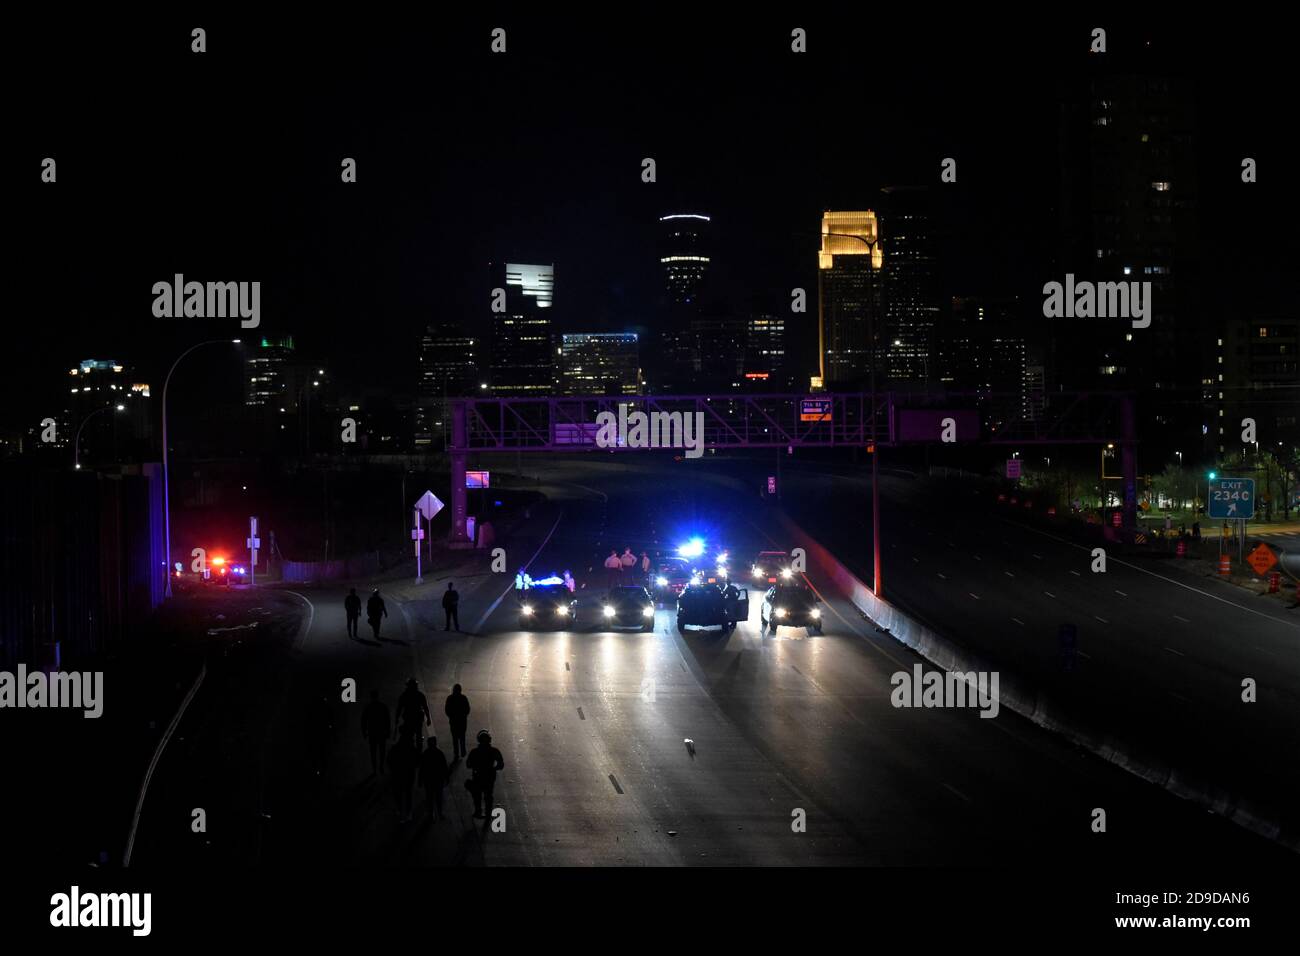 Les manifestants sont escortés par la police à la sortie de l'autoroute I-94 à la suite de l'élection présidentielle de 2020 à Minneapolis, Minnesota, États-Unis, le 4 novembre 2020. REUTERS/Nicholas Pfosi Banque D'Images